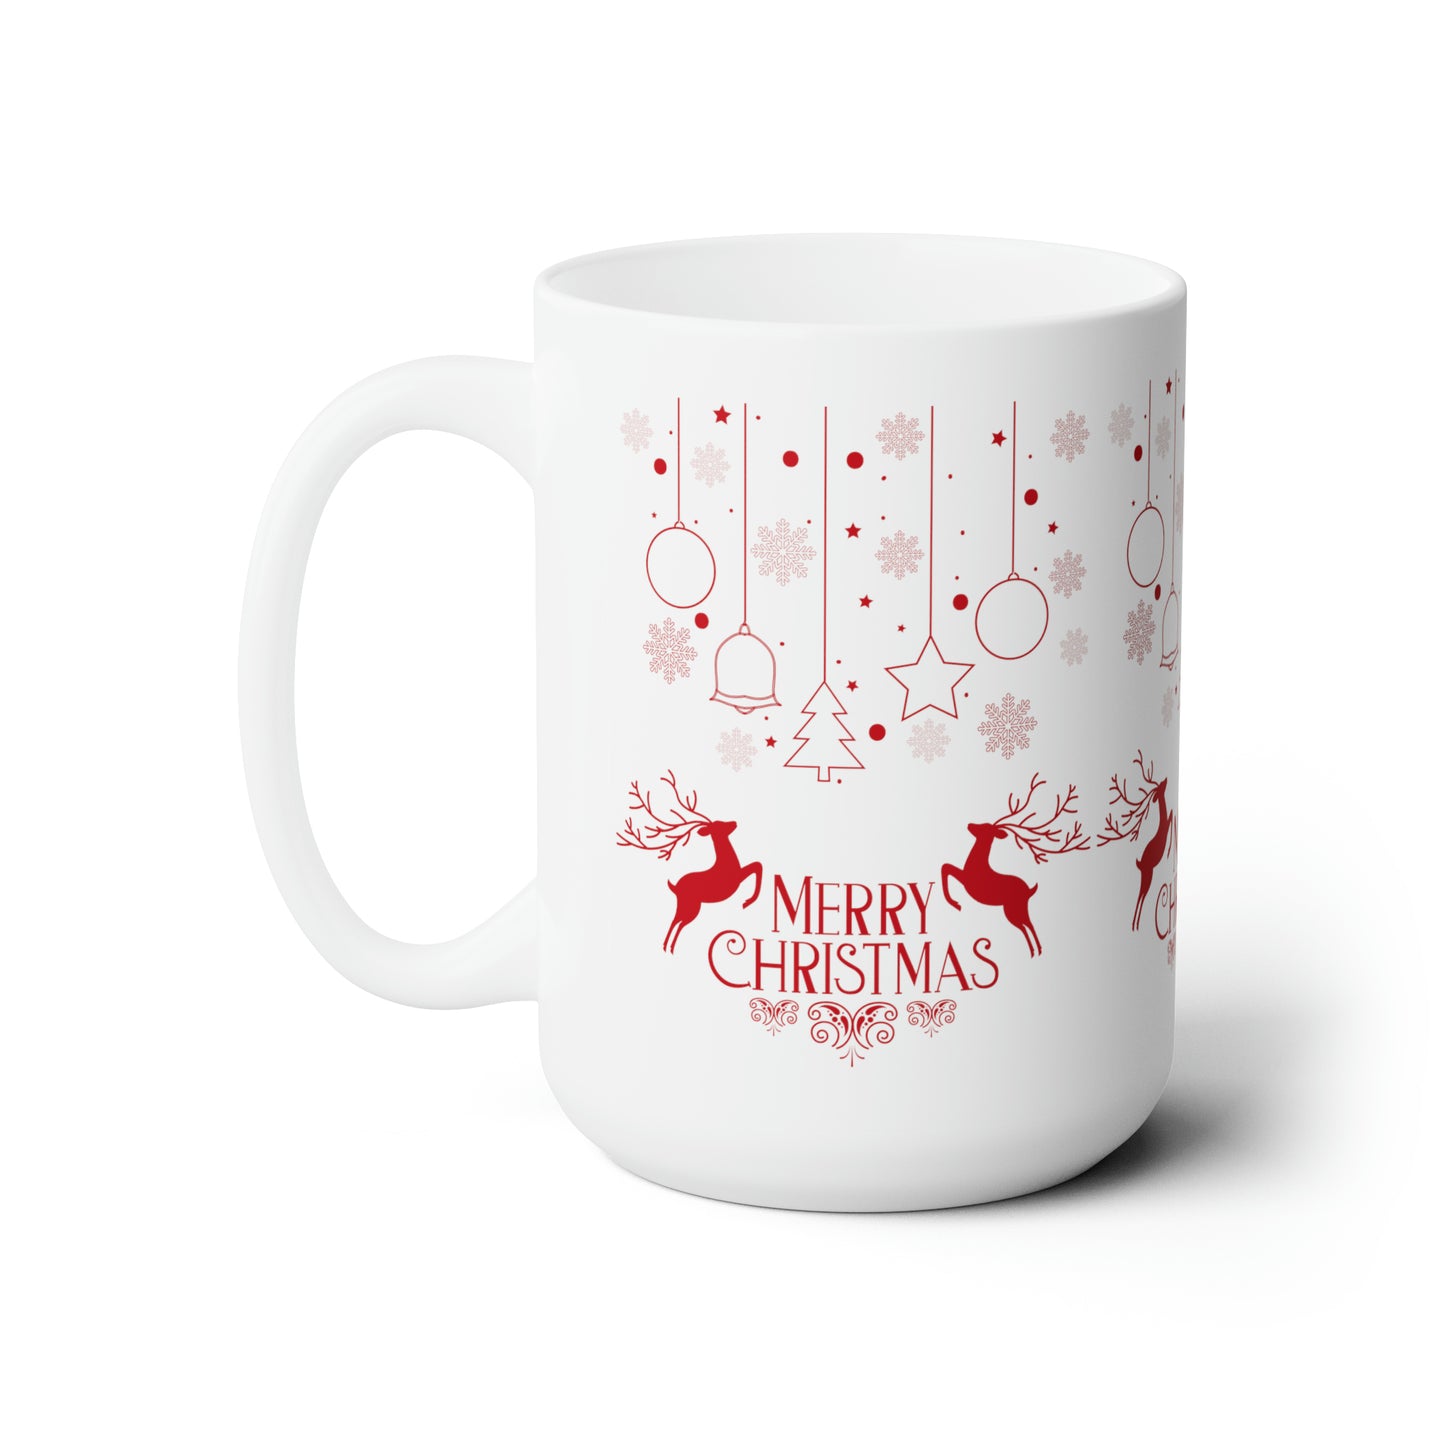 Merry Christmas Printed Ceramic Mug, 15oz, Red